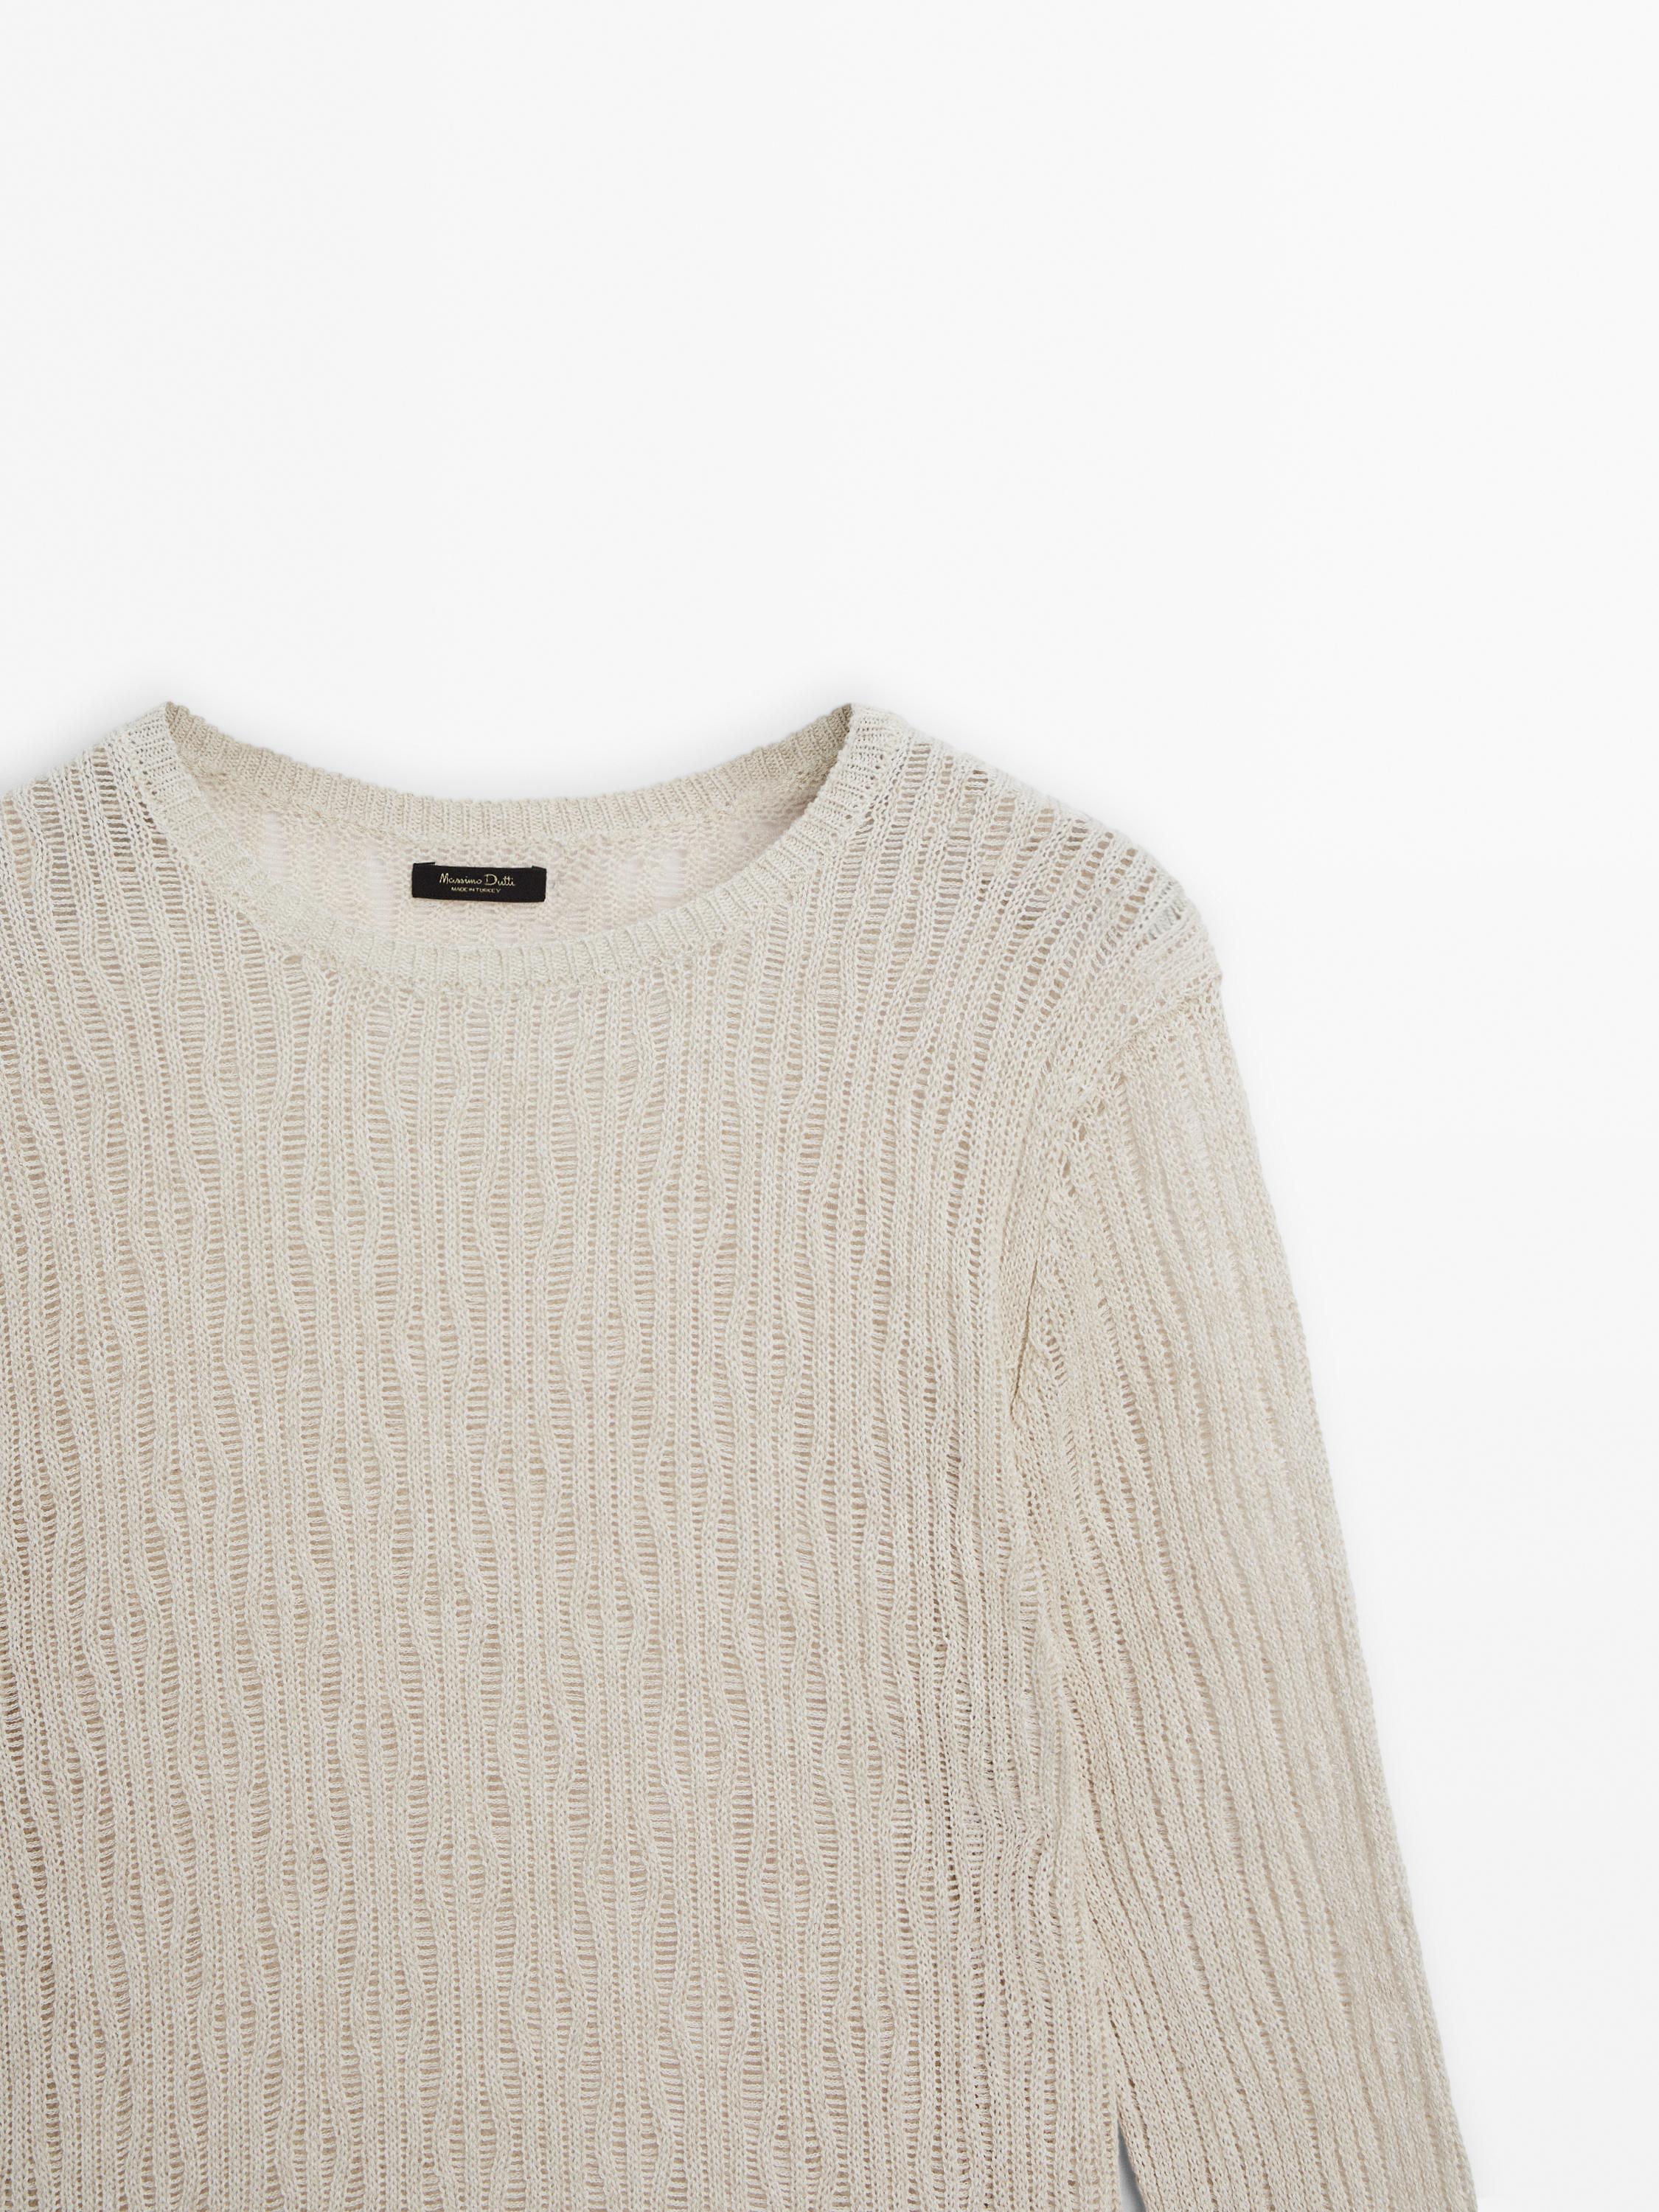 Knit crew neck sweater with wavy detail - Sand | ZARA Canada